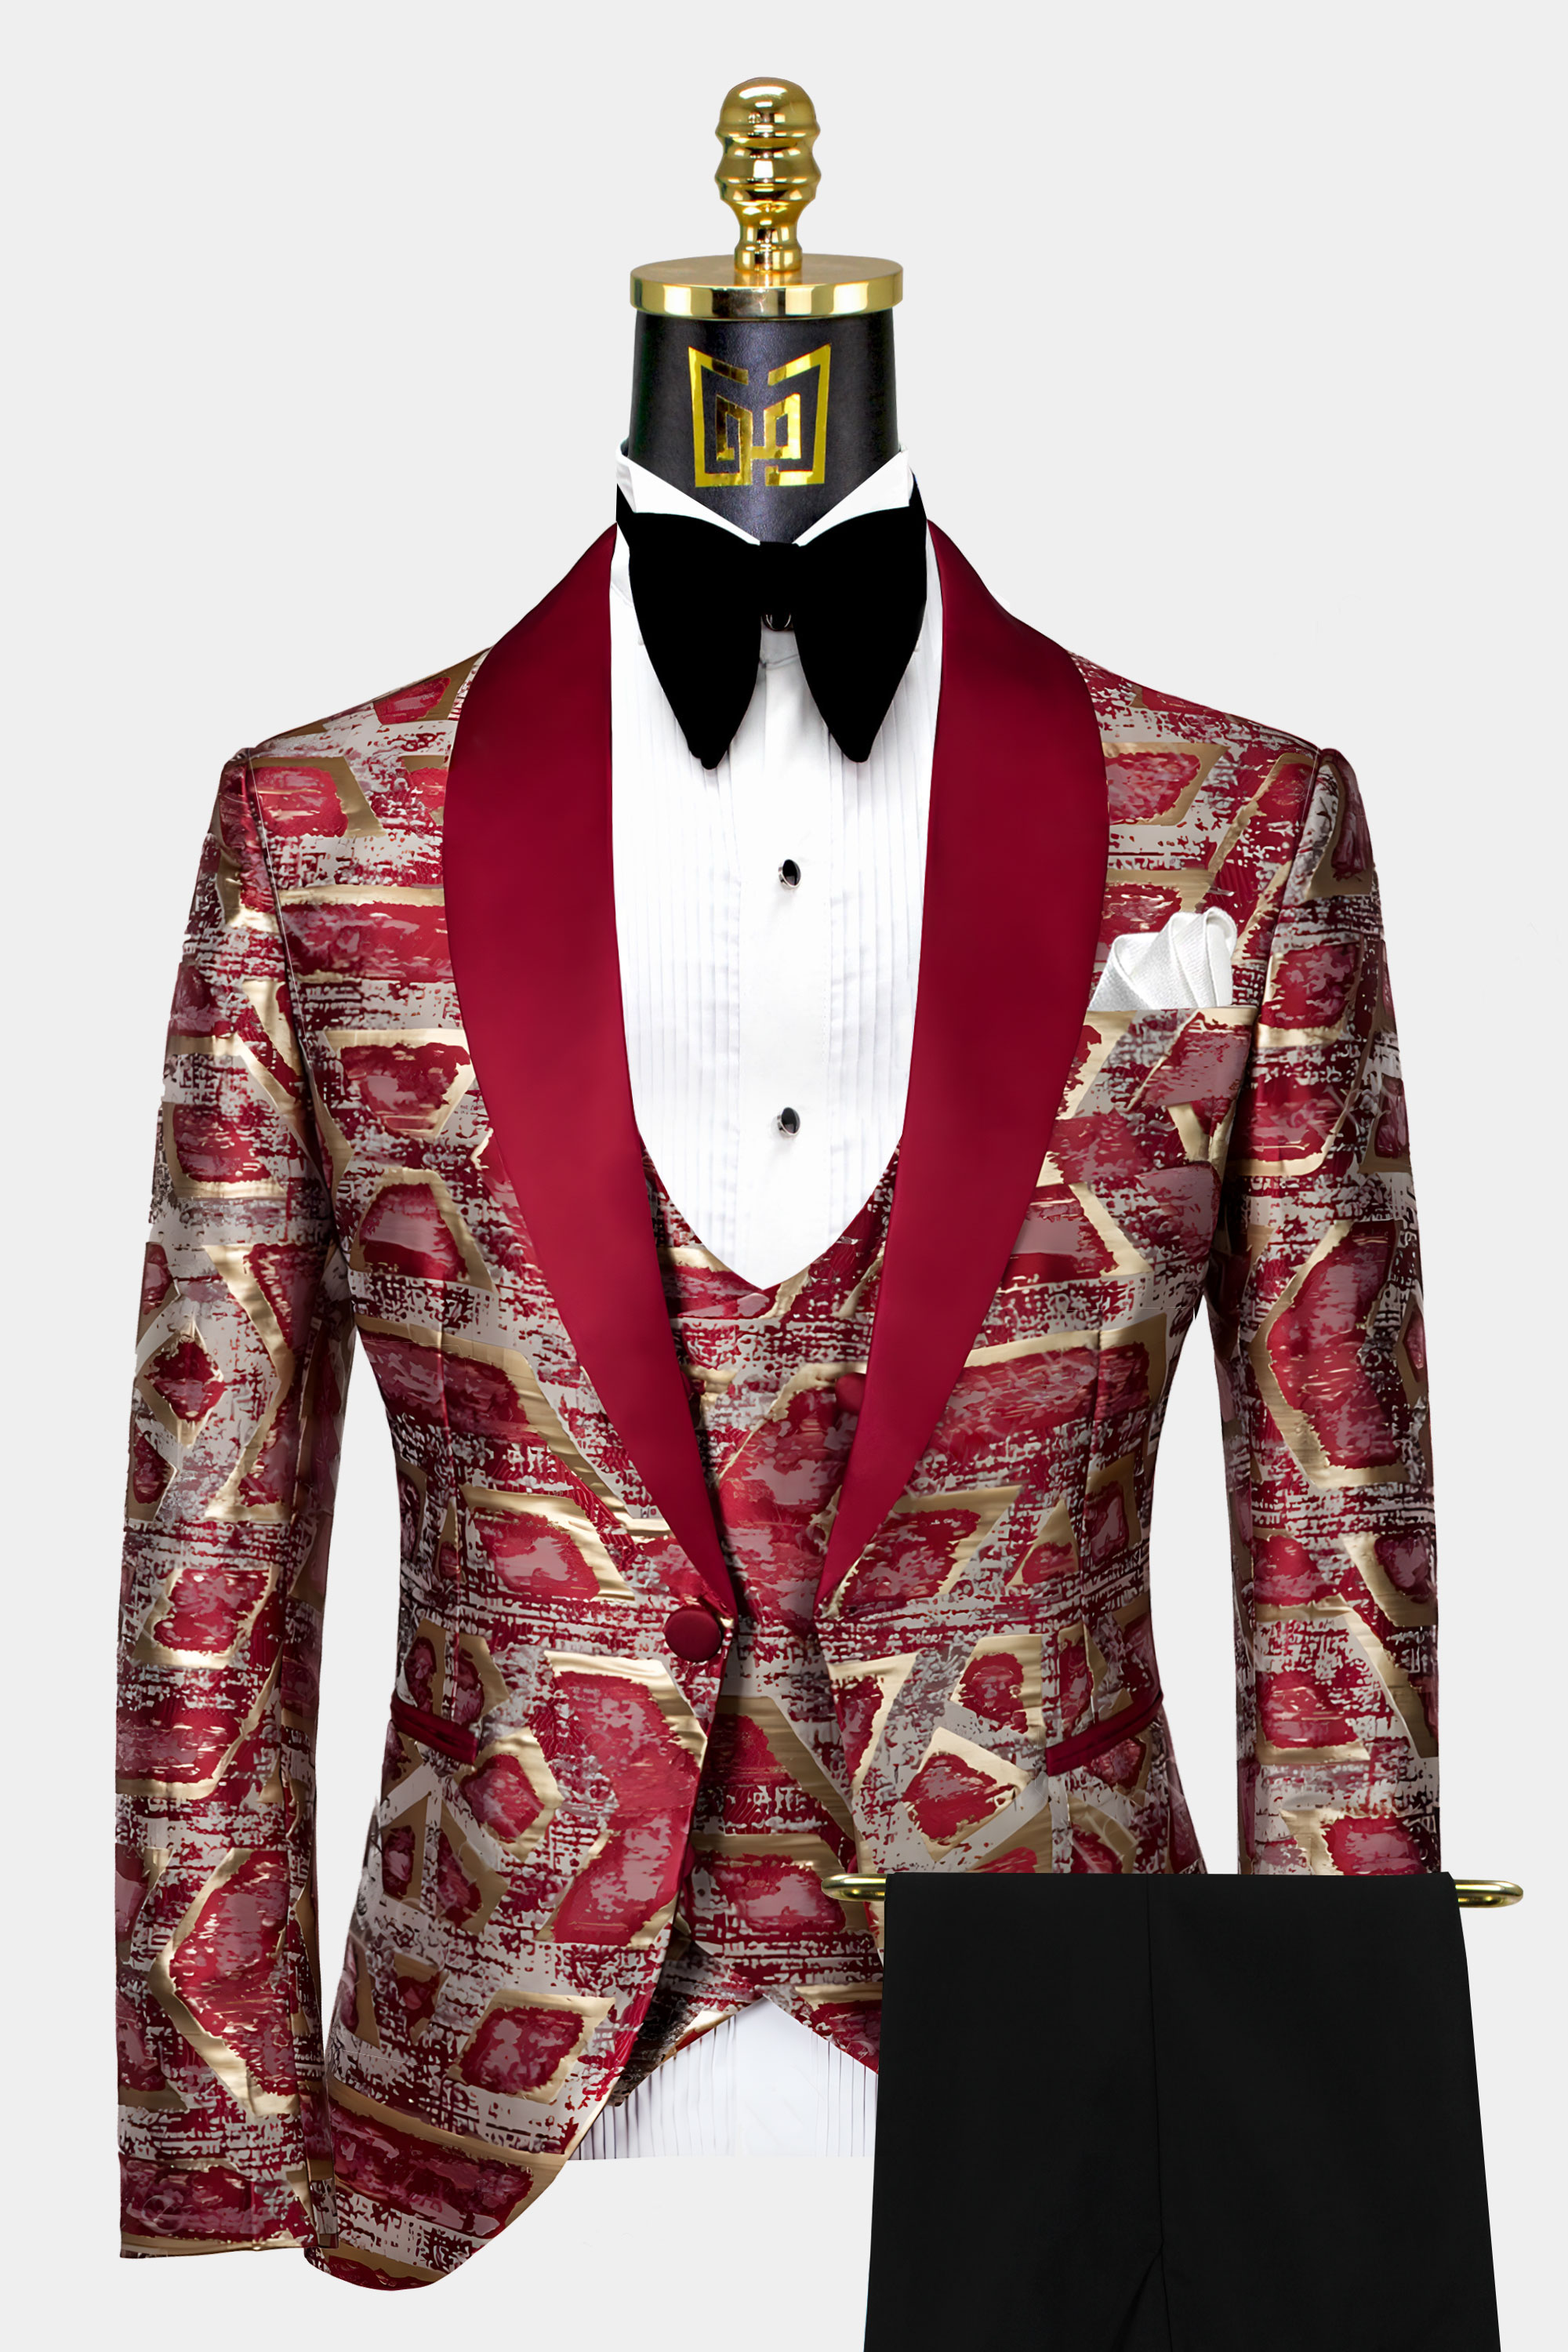 Mens-Burgundy-and-Gold-Tuxedo-Wedding-Groom-Prom-Suit-from-Gentlemansguru.com